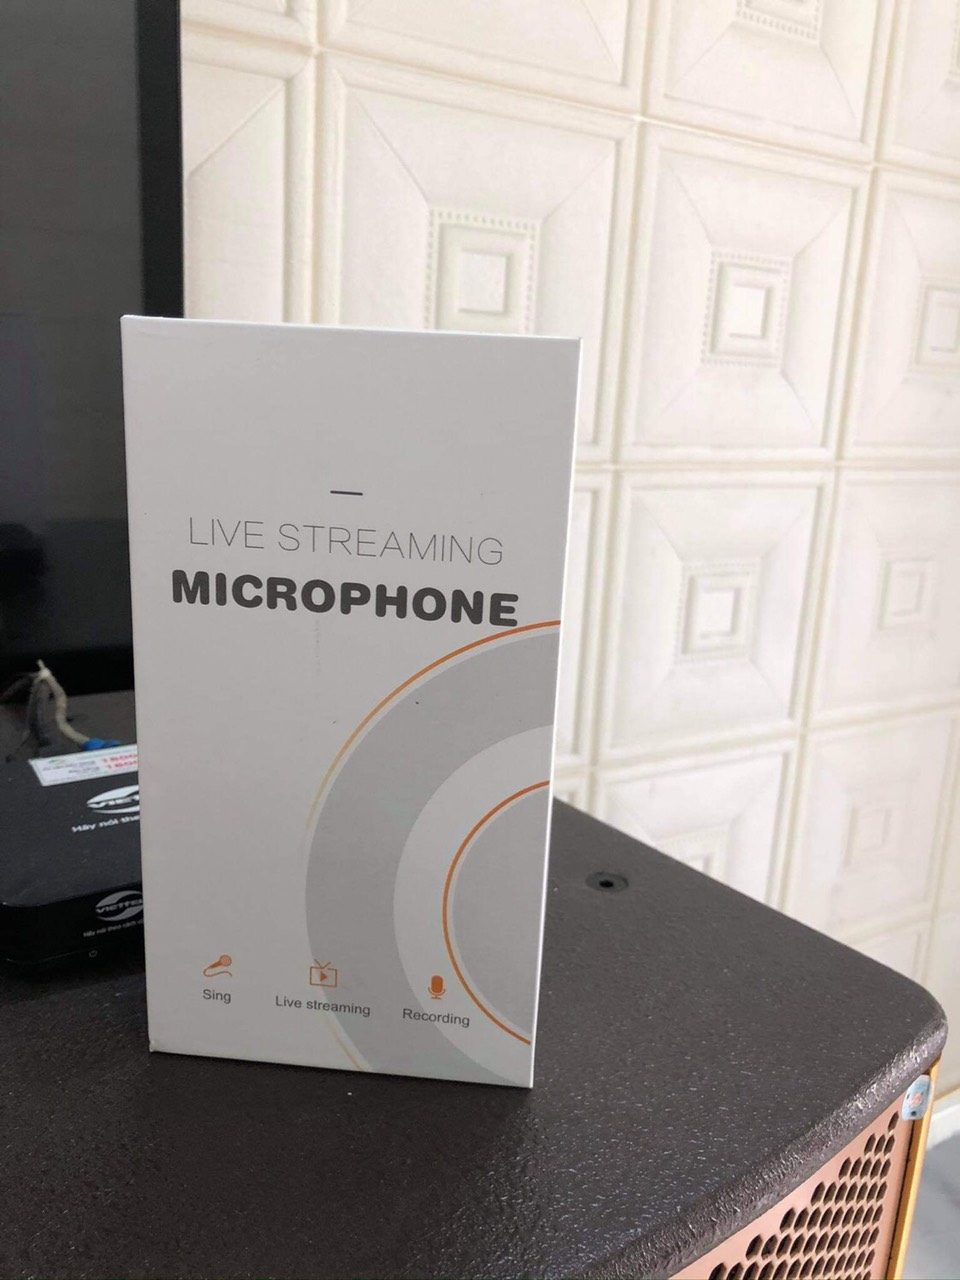 Micro Livestream MISOUND Live -M8.(không cần soundcard) Hát karaoke trên ÔTô - Hàng chính hãng